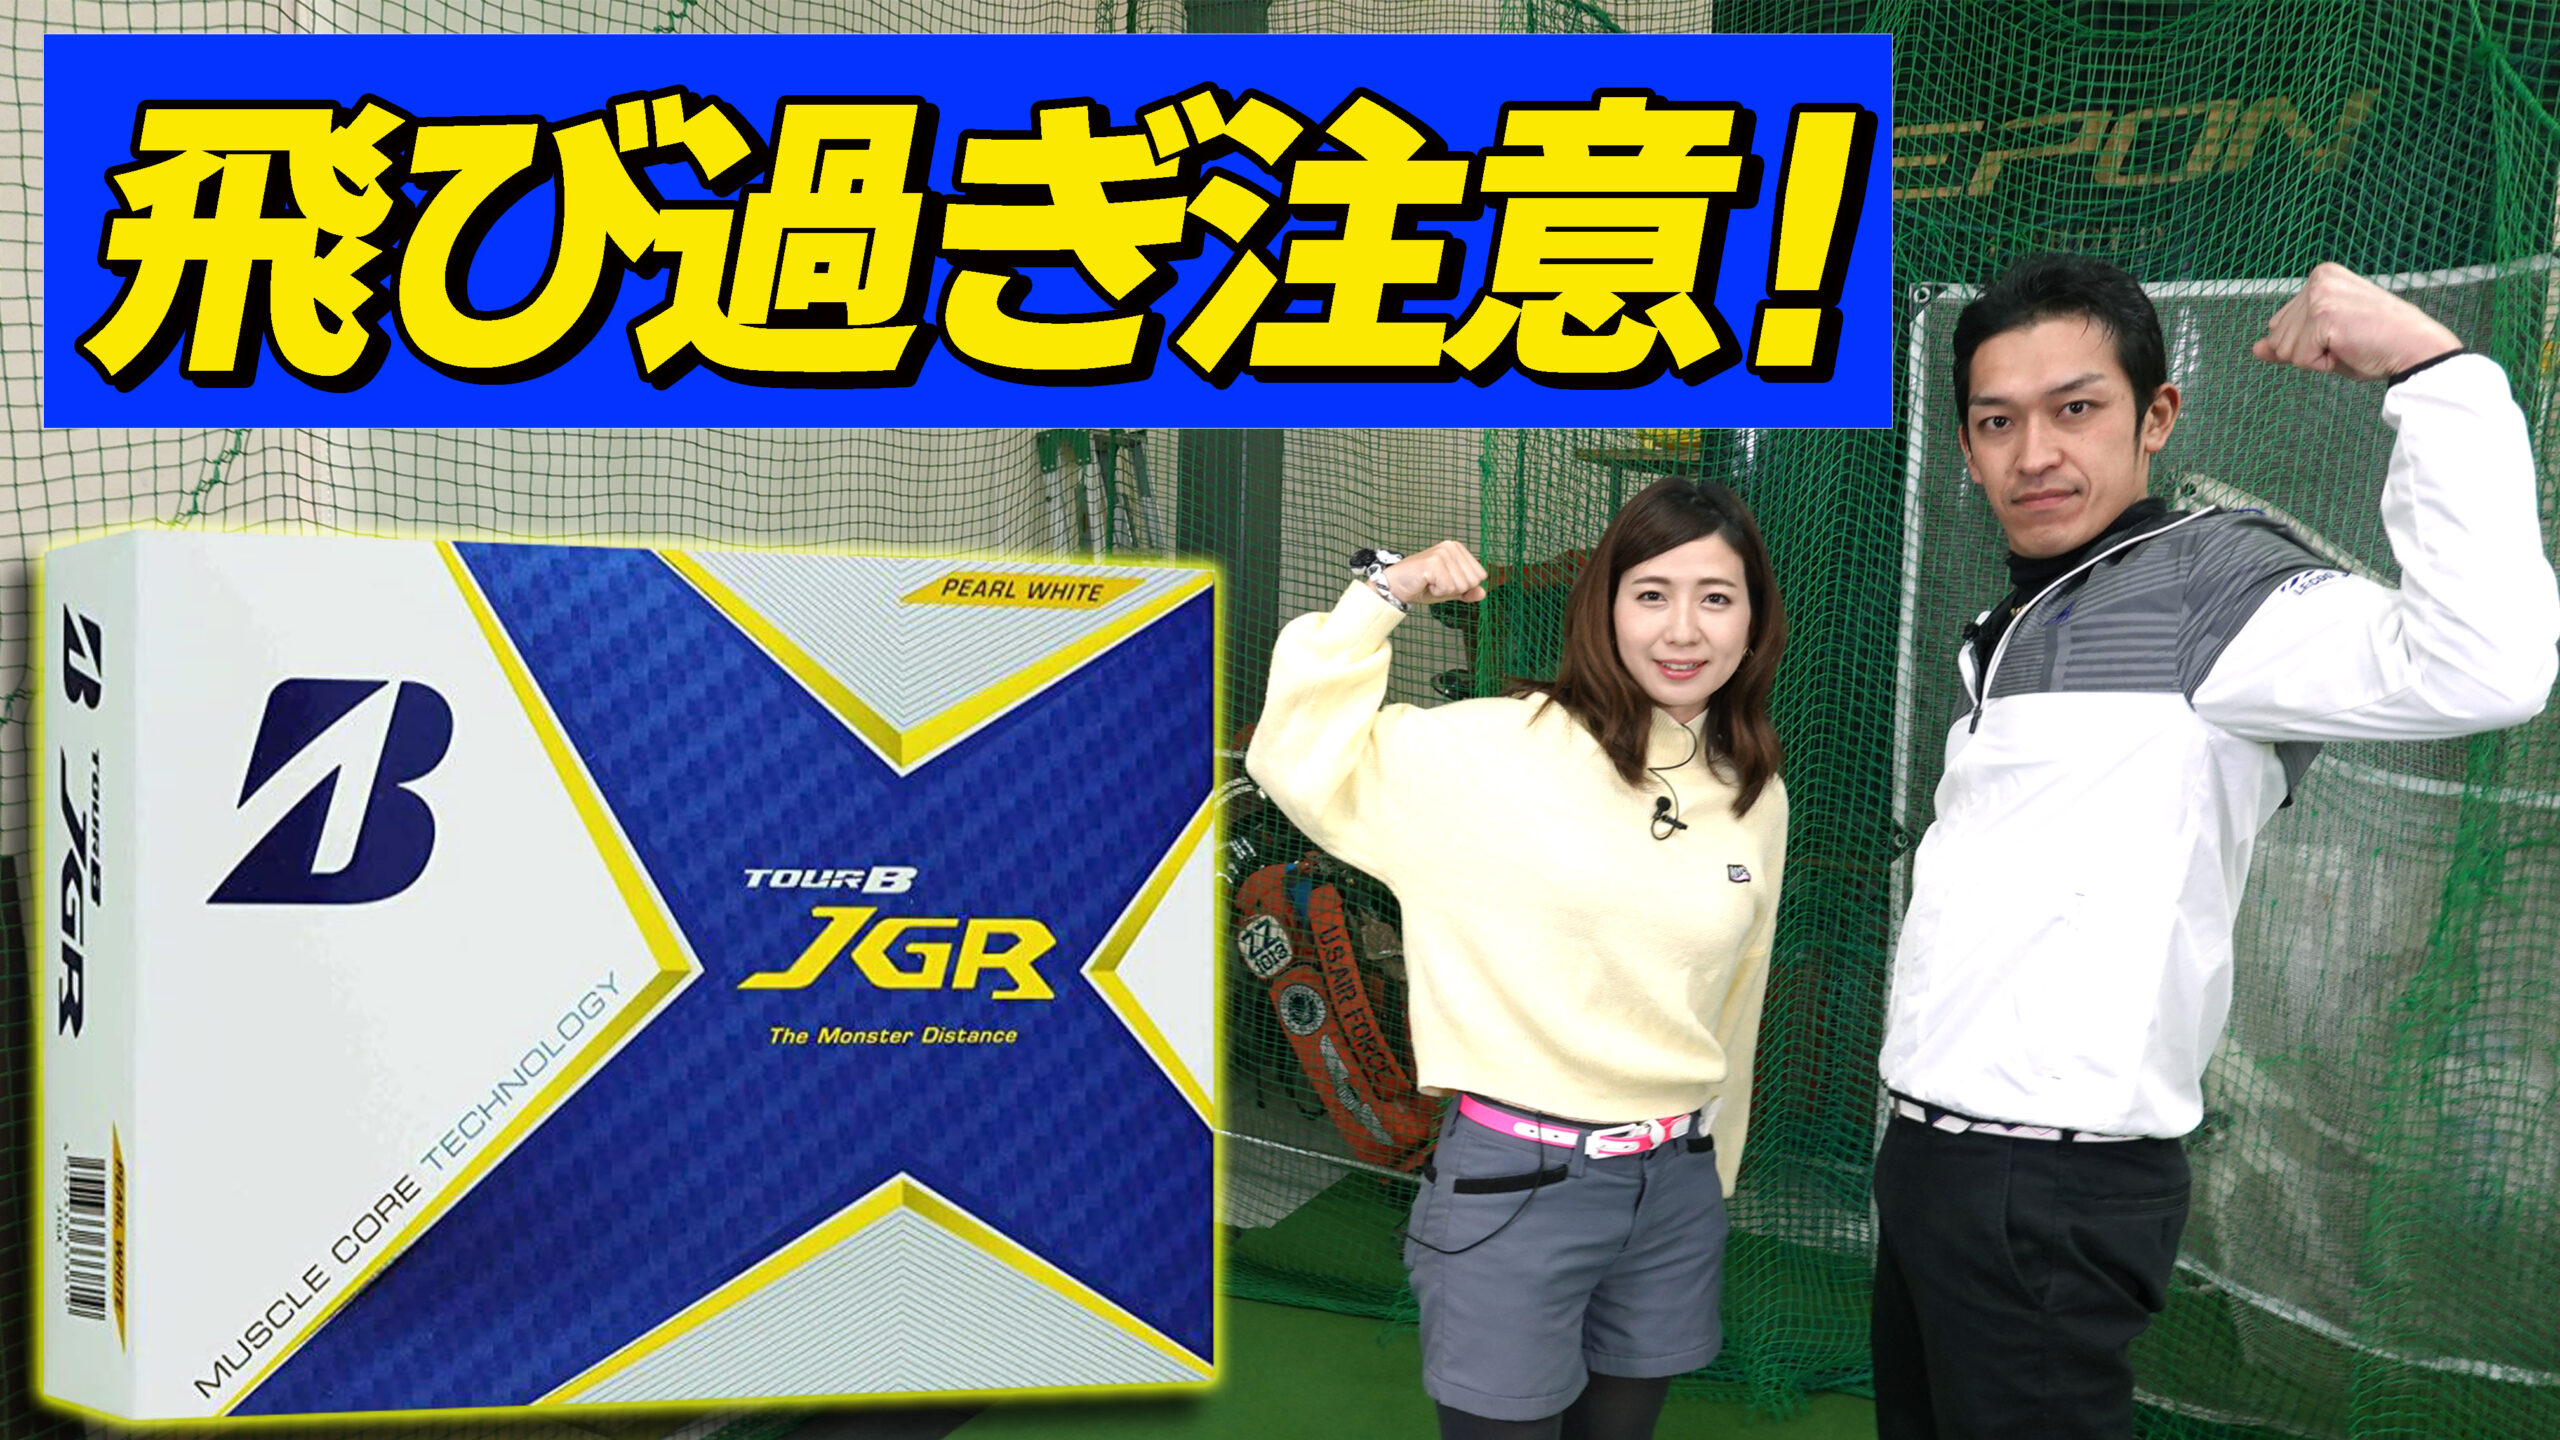 2090円 大人気新品 BRIDGESTONE ブリヂストン ゴルフボール TOUR B JGR 2021年モデル 12球入